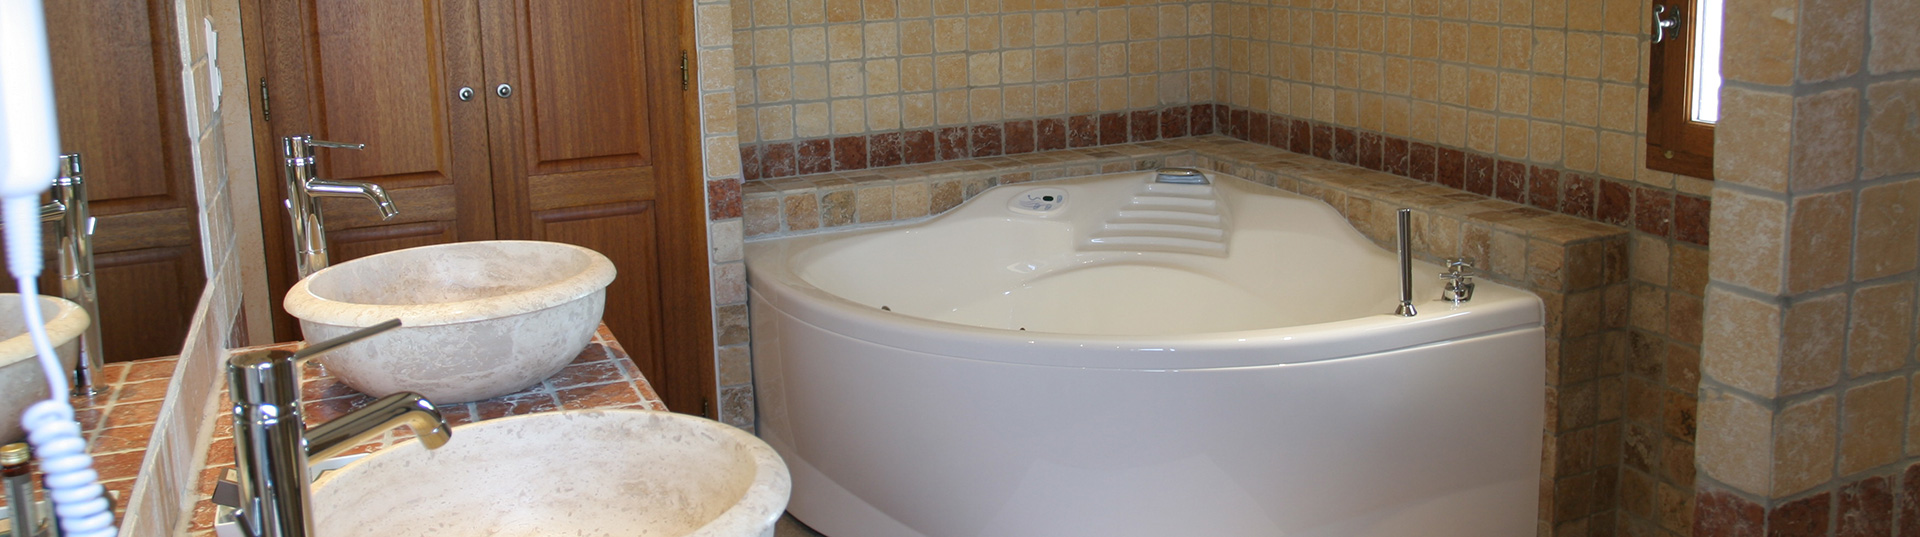 Salle de bain en marbre brut : hébergement en chambre près de Narbonne